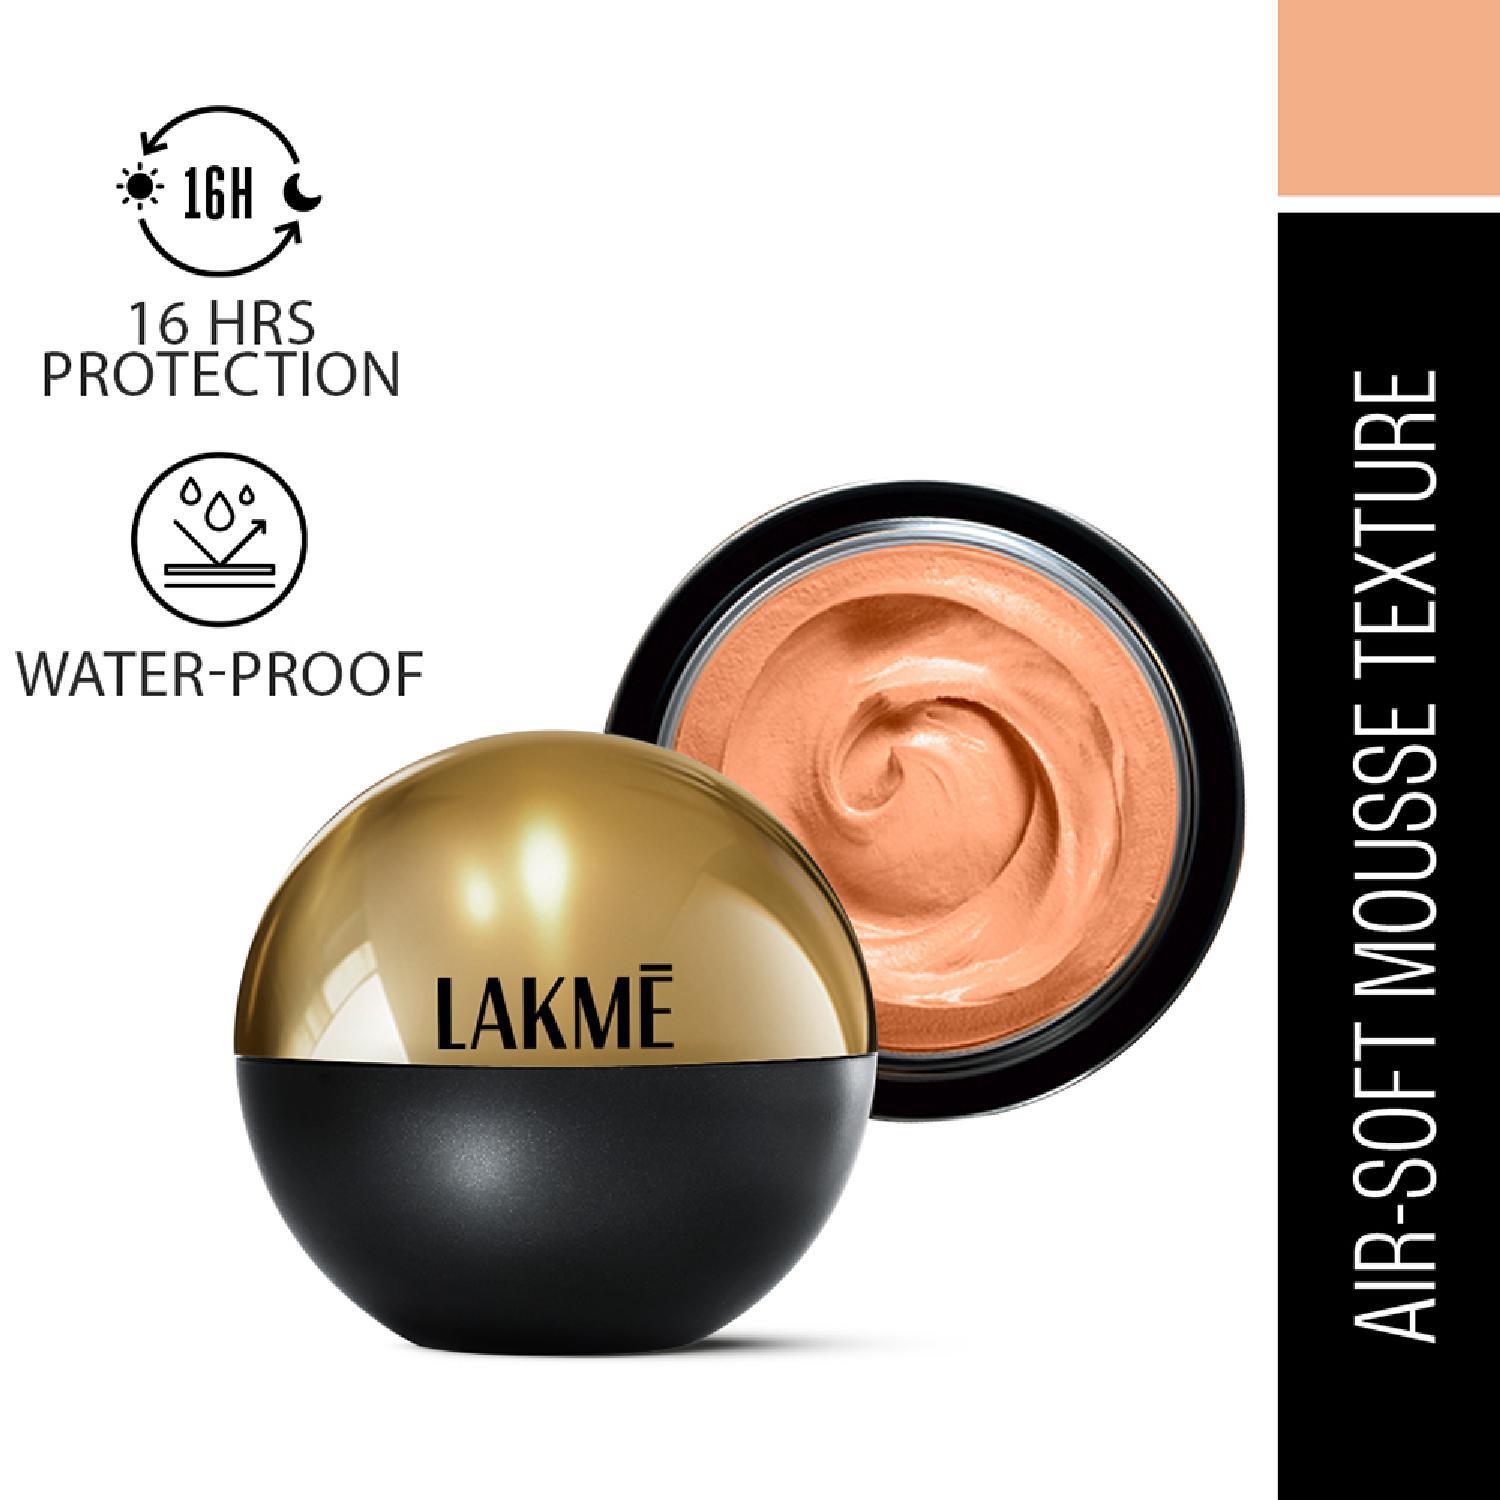 Lakme | Lakme Xtraordin-airy Mattereal Mousse Foundation, 02 Rose Crème (25 g)